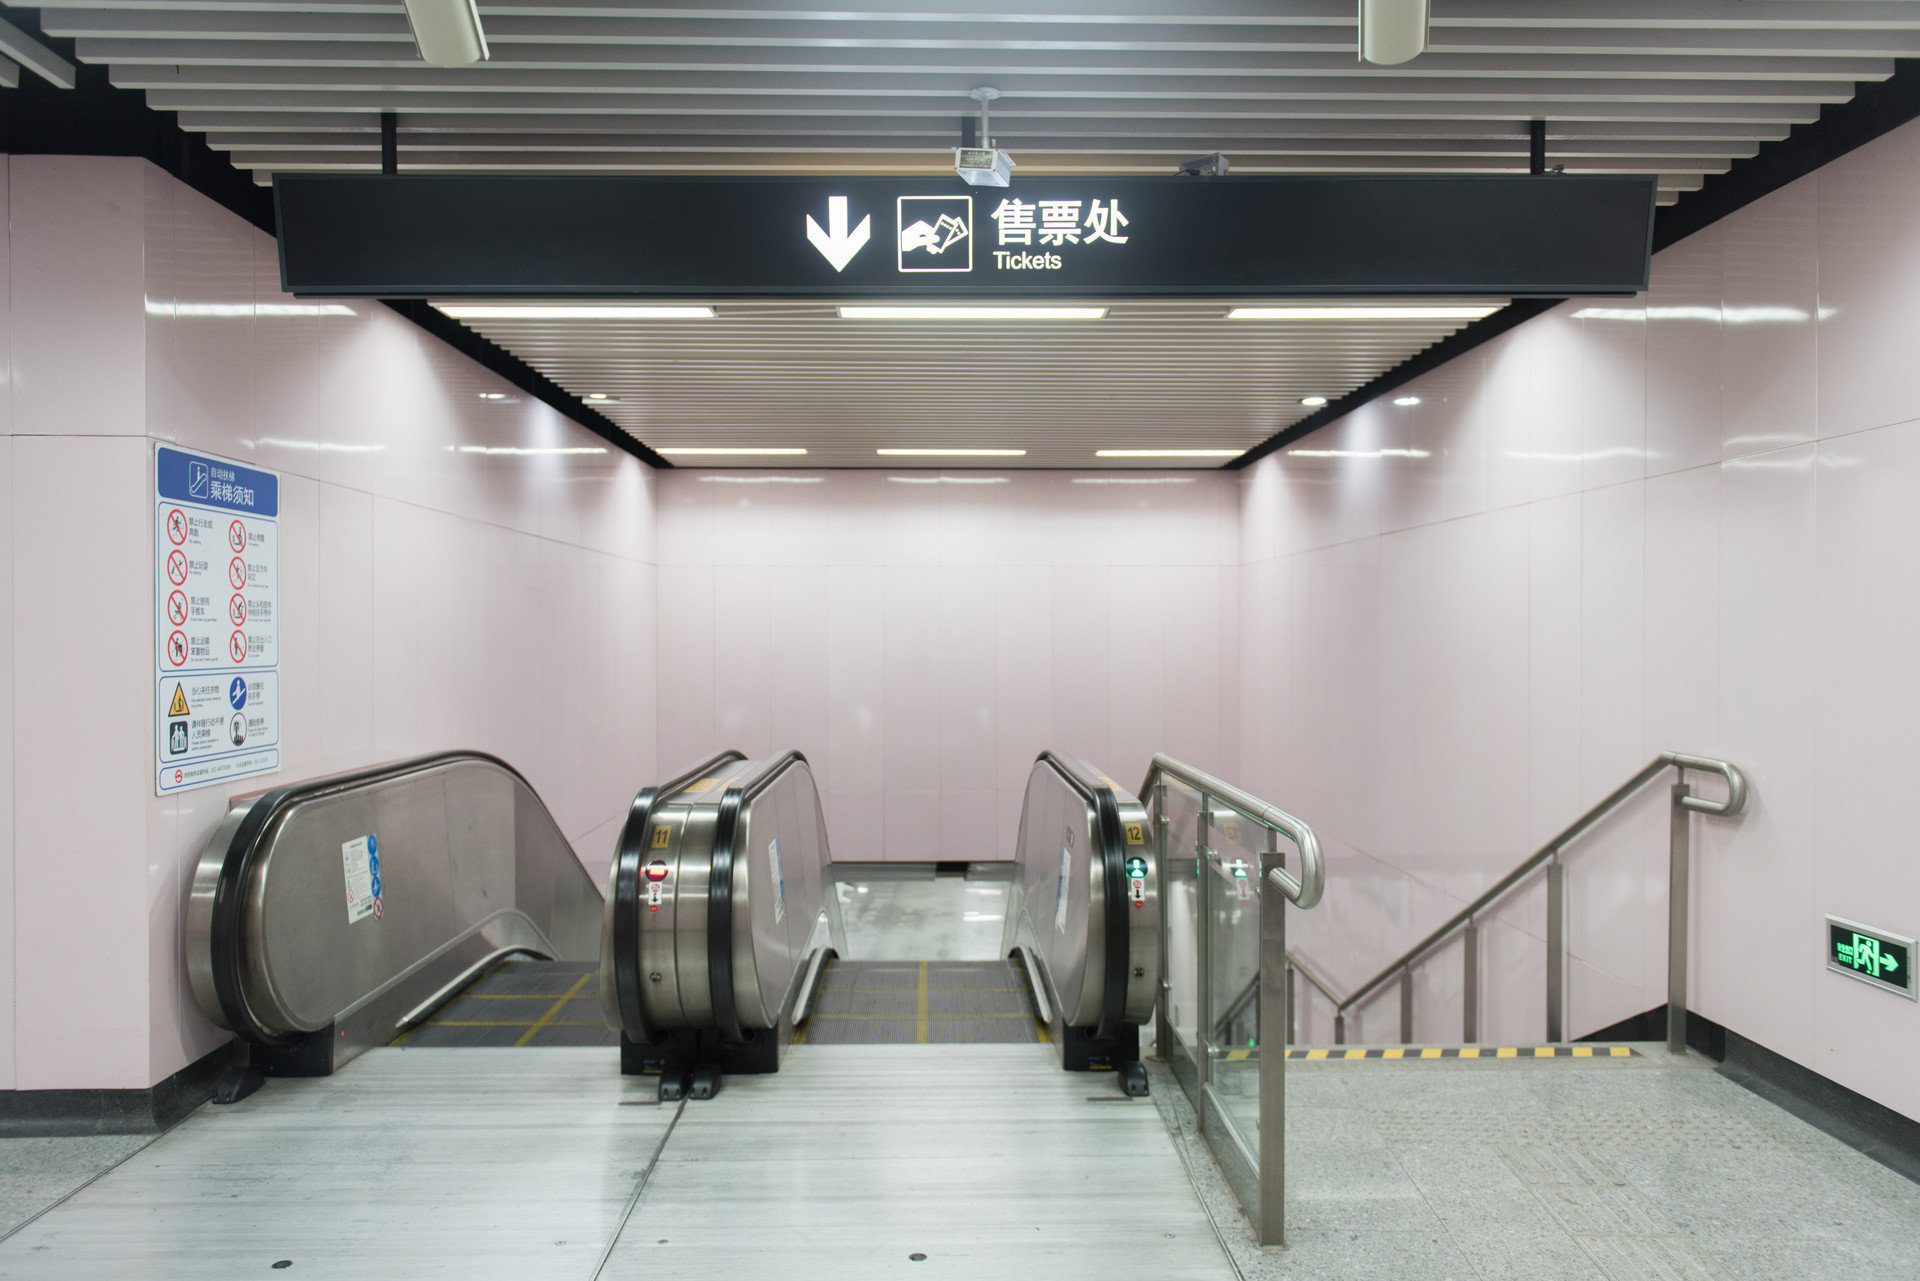 展现城市文明窗口 青岛地铁车站为市民过街提供方便